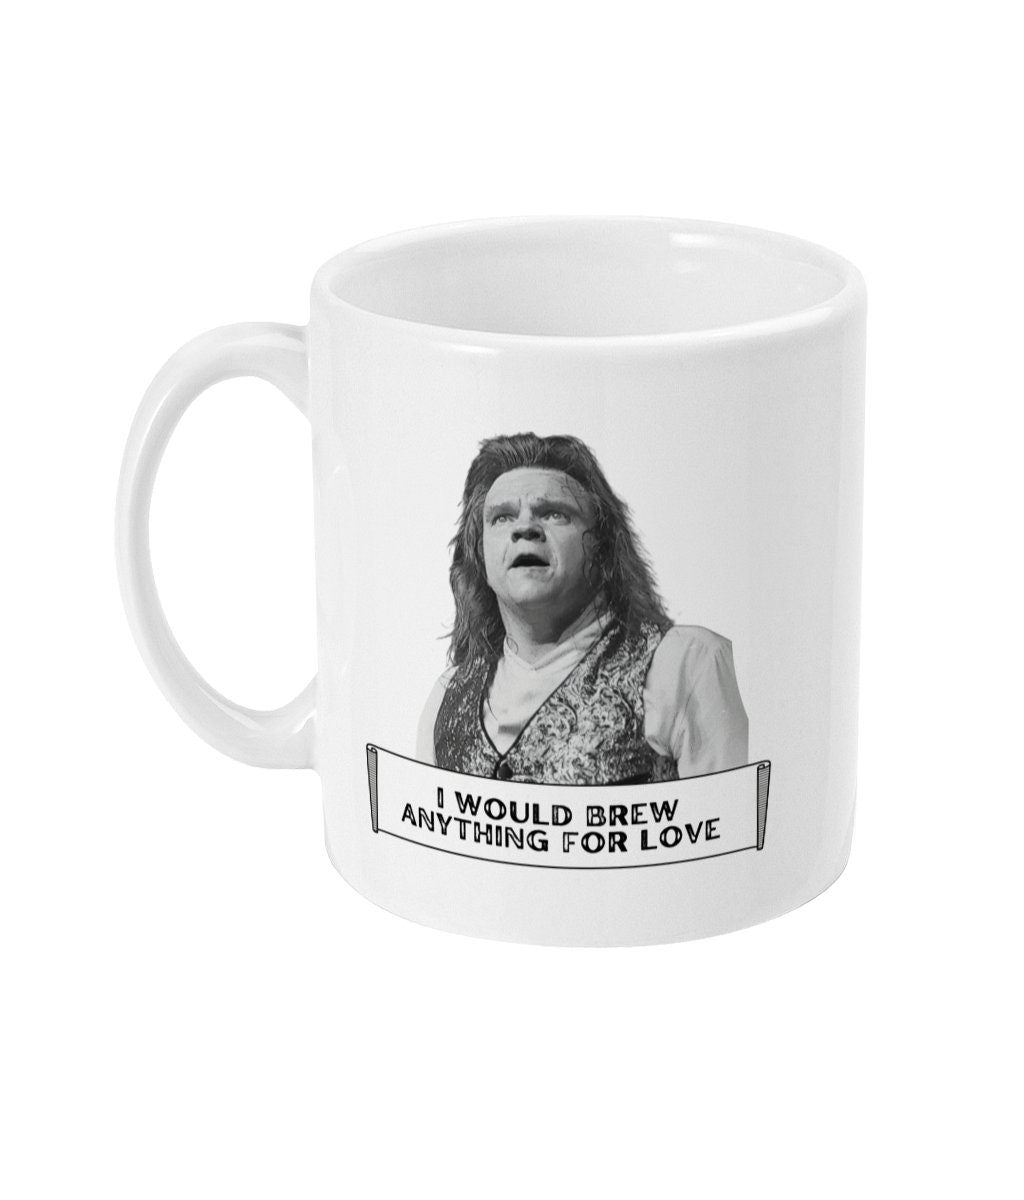 Funny Meatloaf Ceramic Mug, Gift For Music Fan, Meatloaf, I Would Brew Anything For Love, 11oz Mug, Funny Mugs, Novelty Mugs, Trending